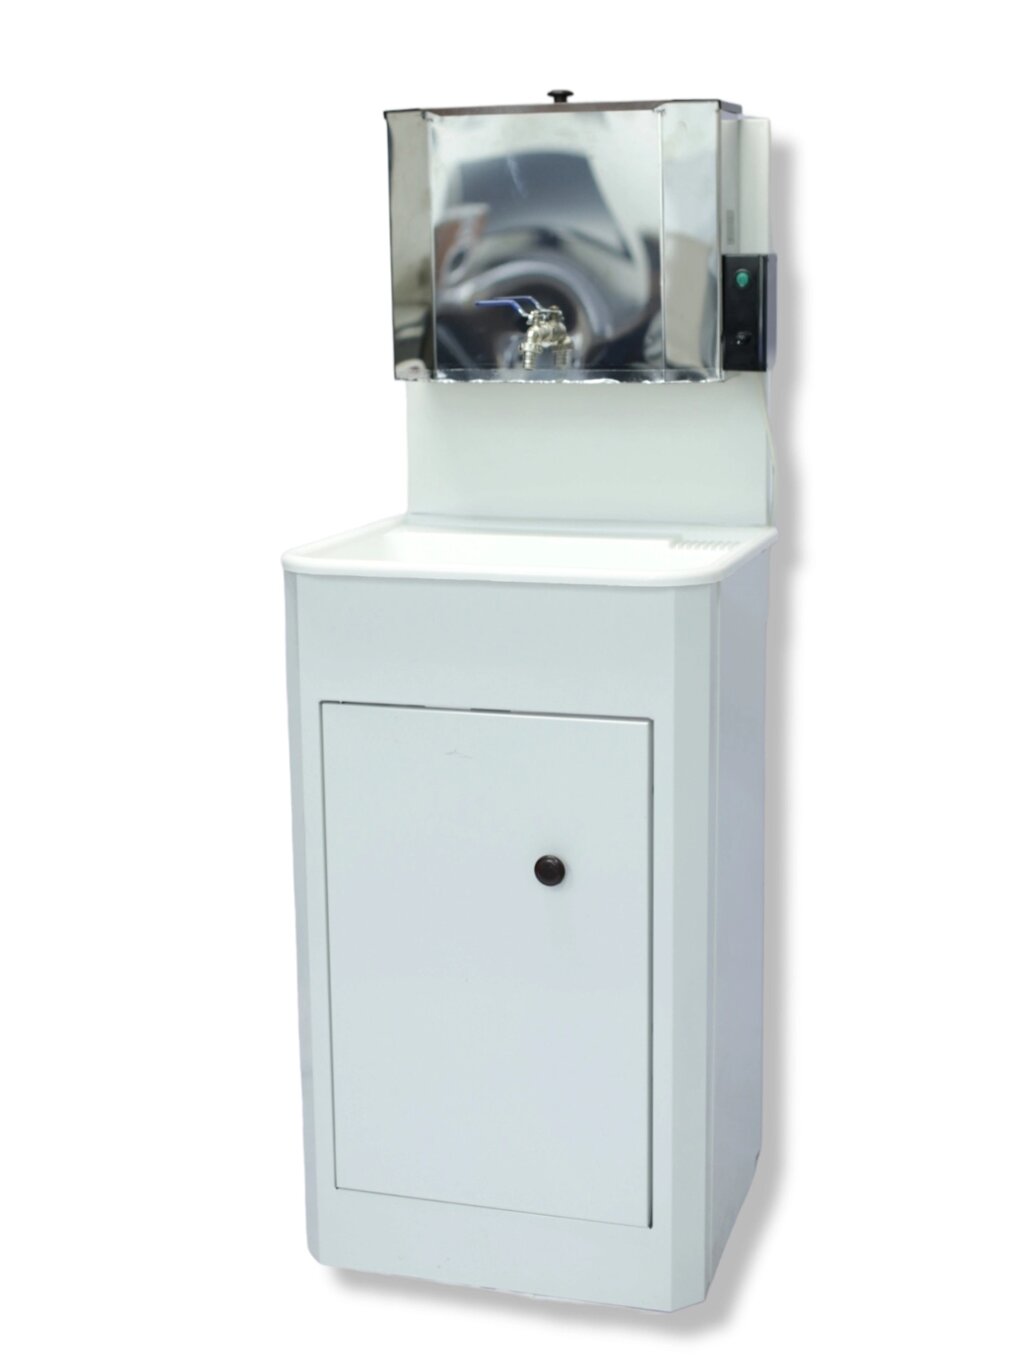 Умывальник «Дачный» с водонагревателем «Петромаш ЭВБО-15Н» (белый, мойка пластик) от компании ART-DECO МАРКЕТ - магазин товаров для дома - фото 1